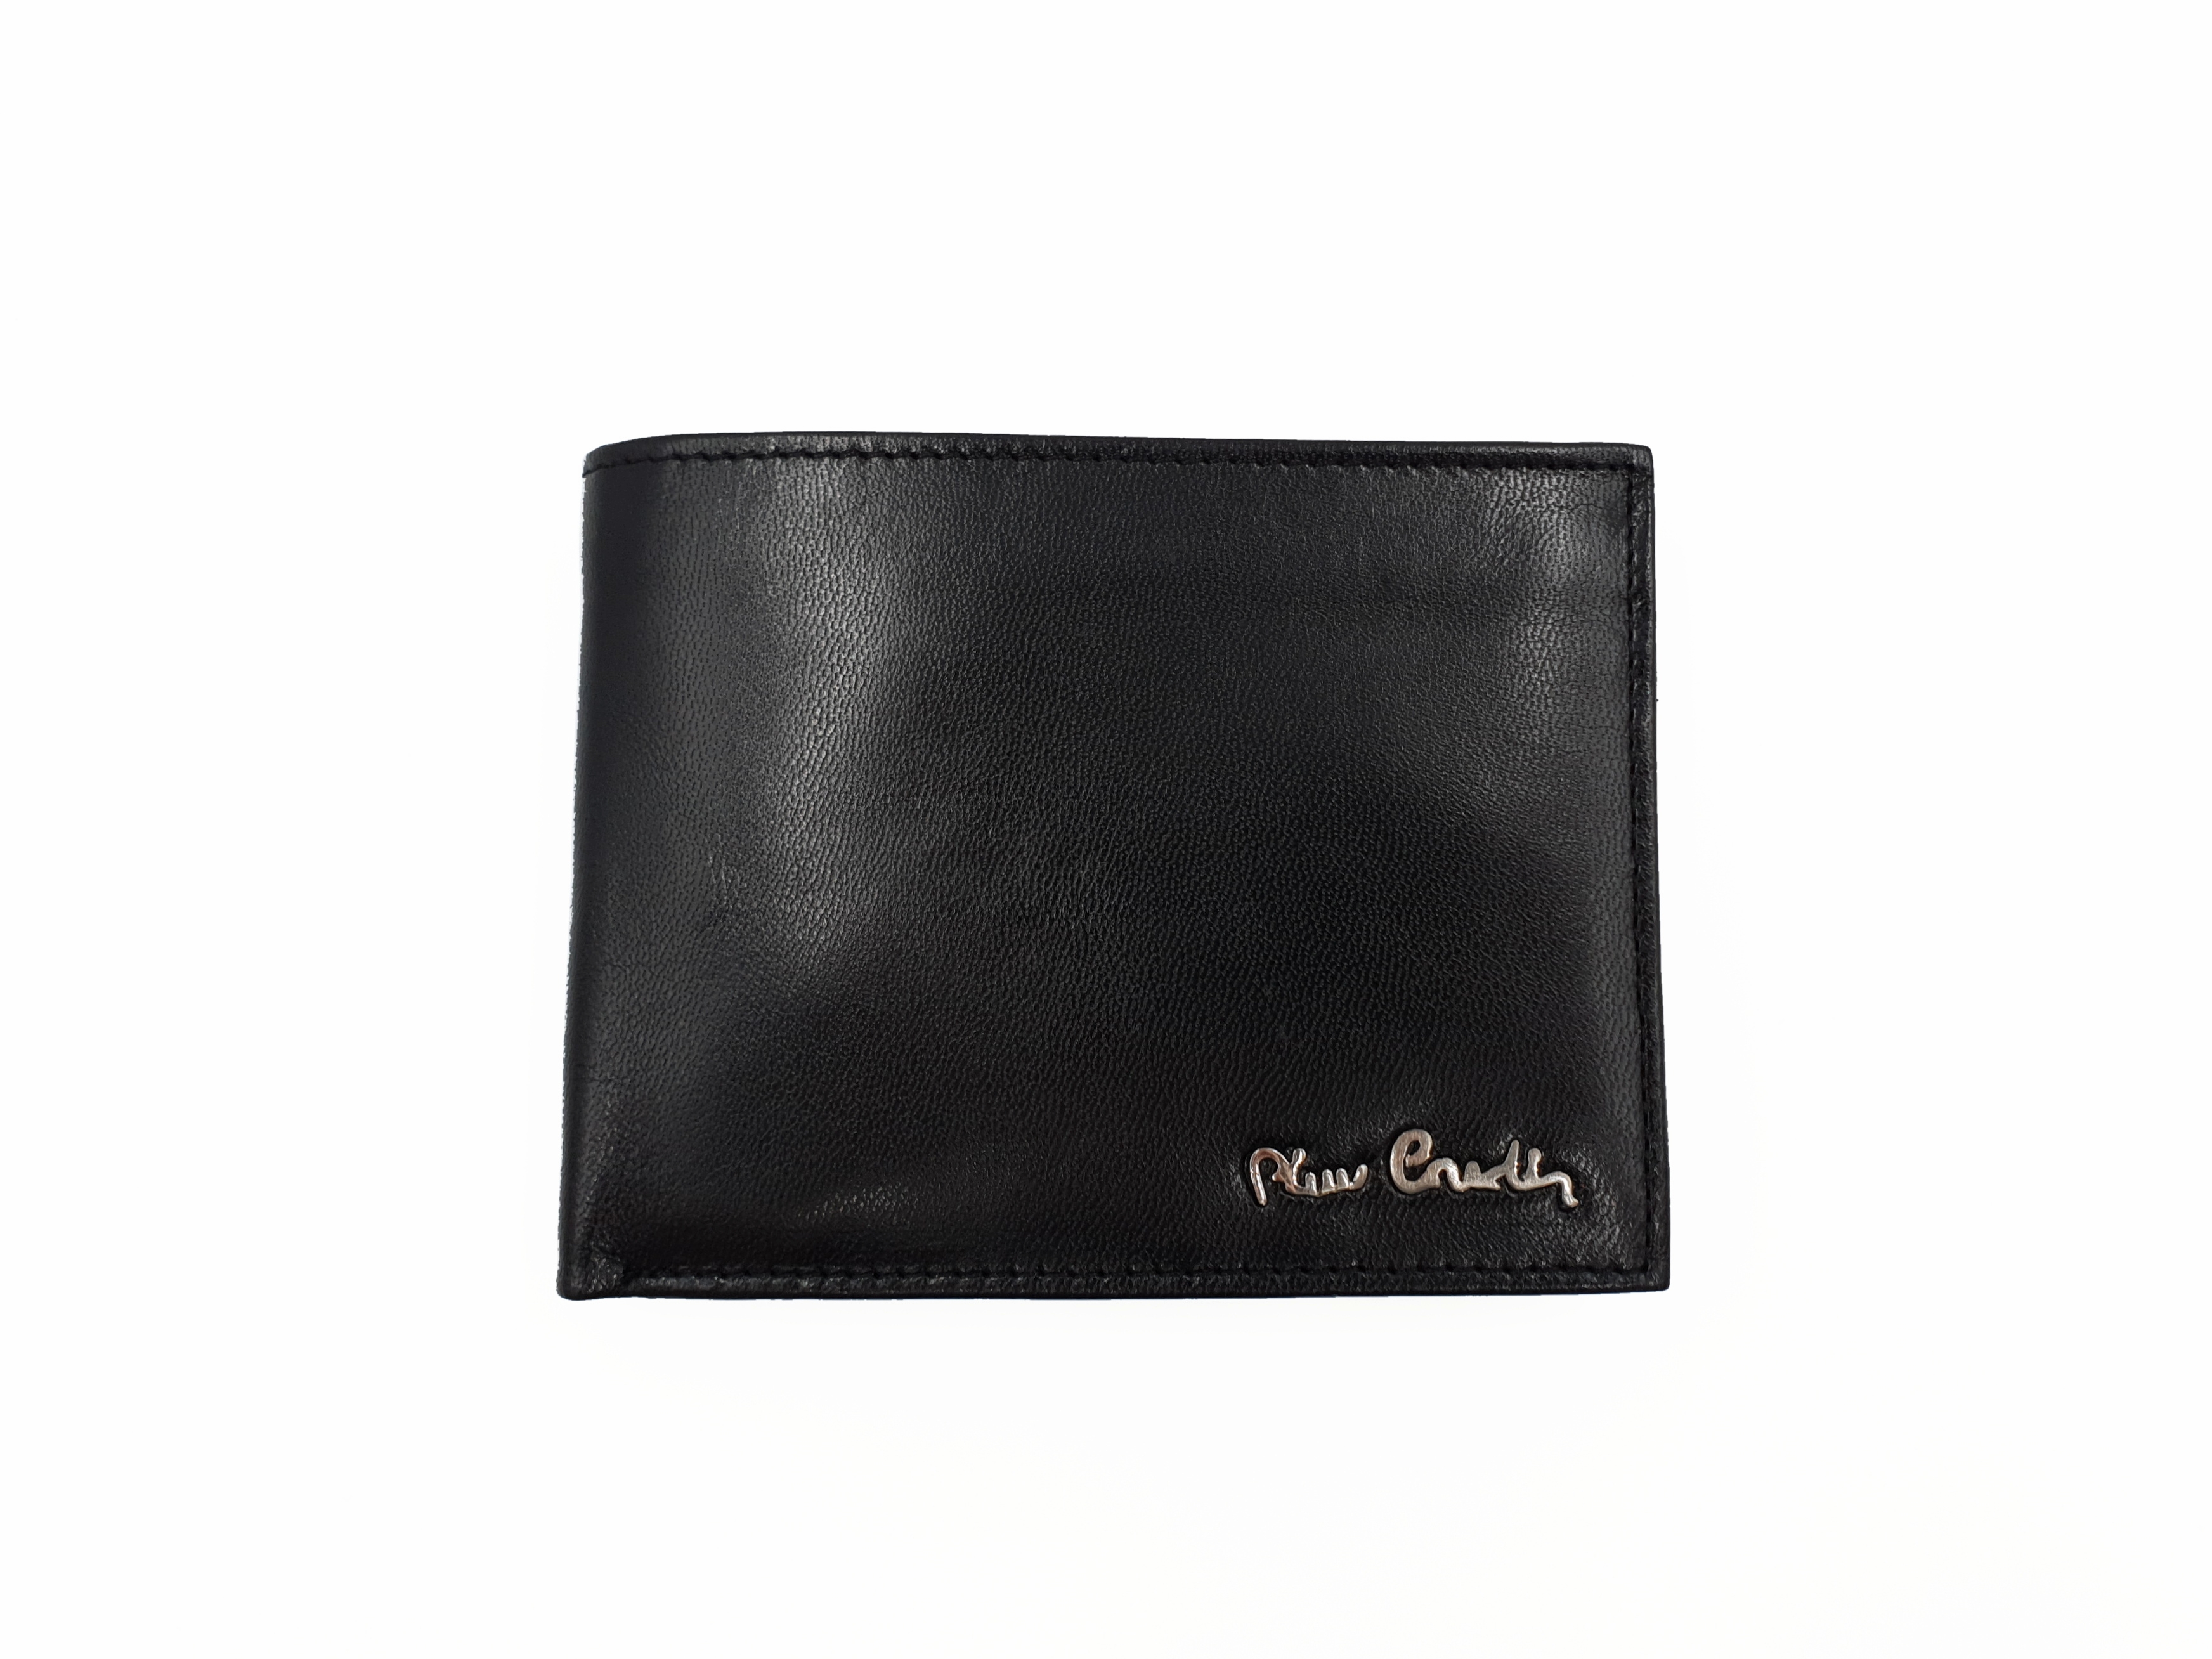 Pánská kožená peněženka Pierre cardin 8806EK008 černá